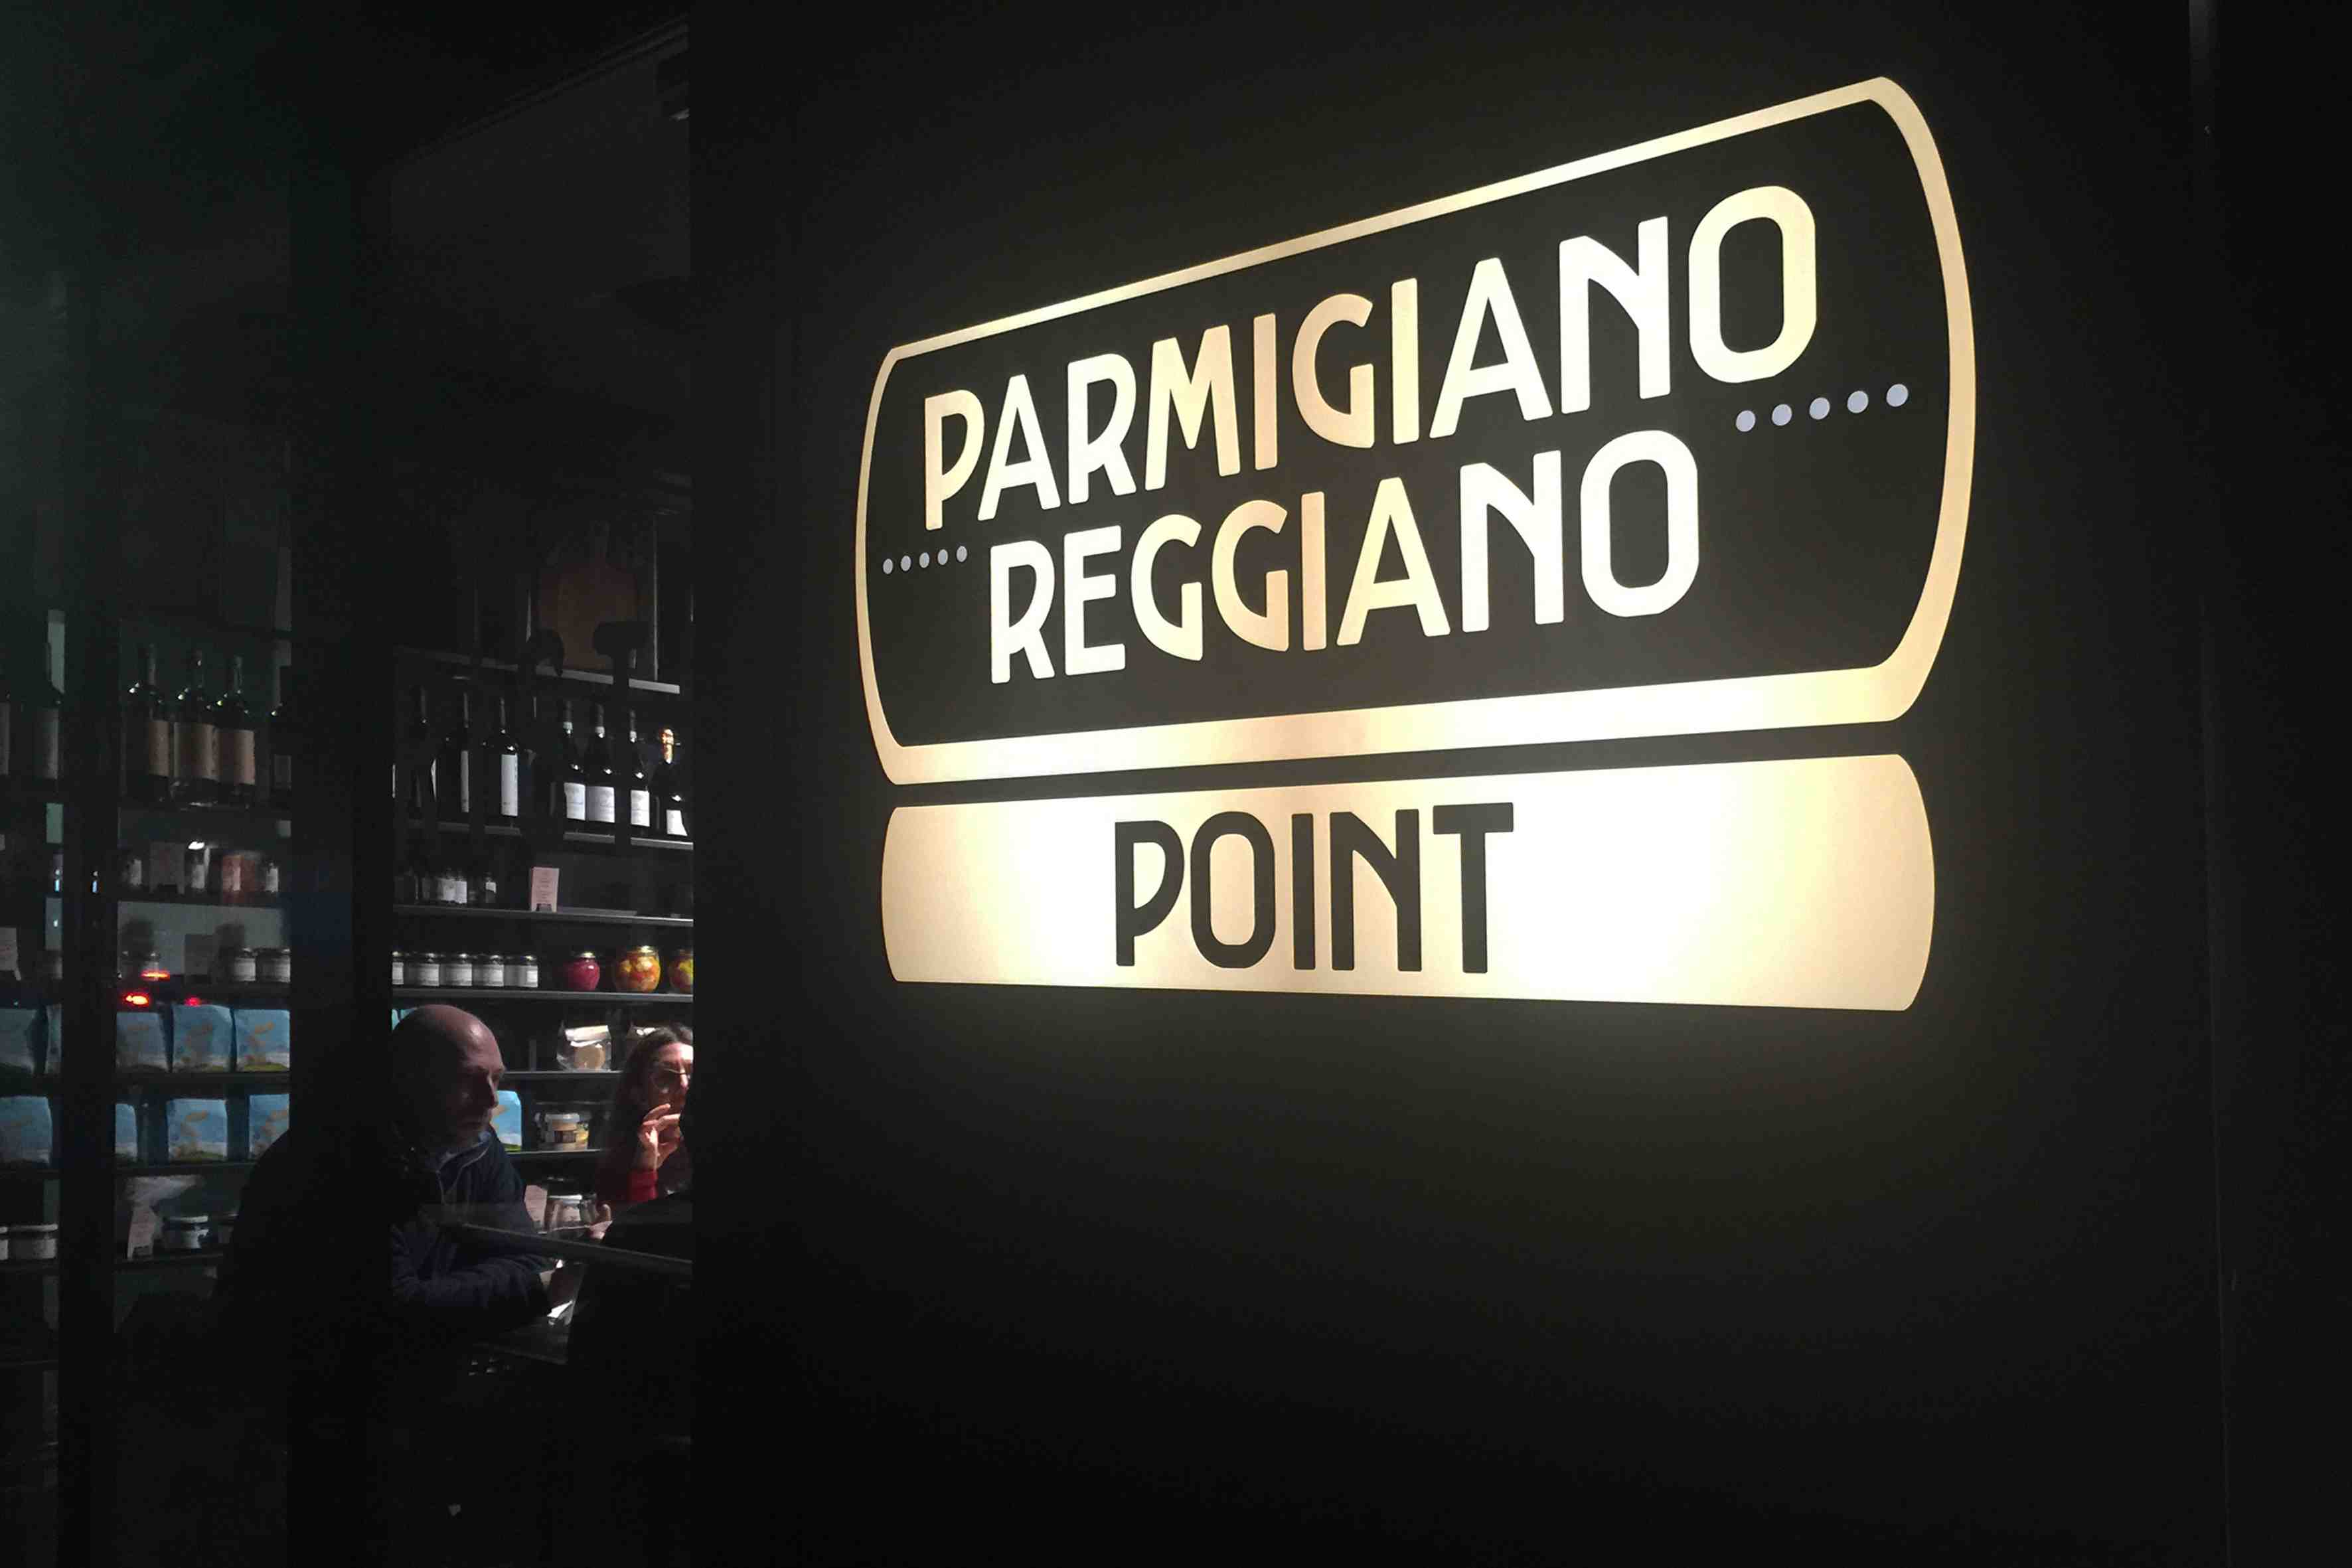 Tutti al Parmigiano Reggiano Point!